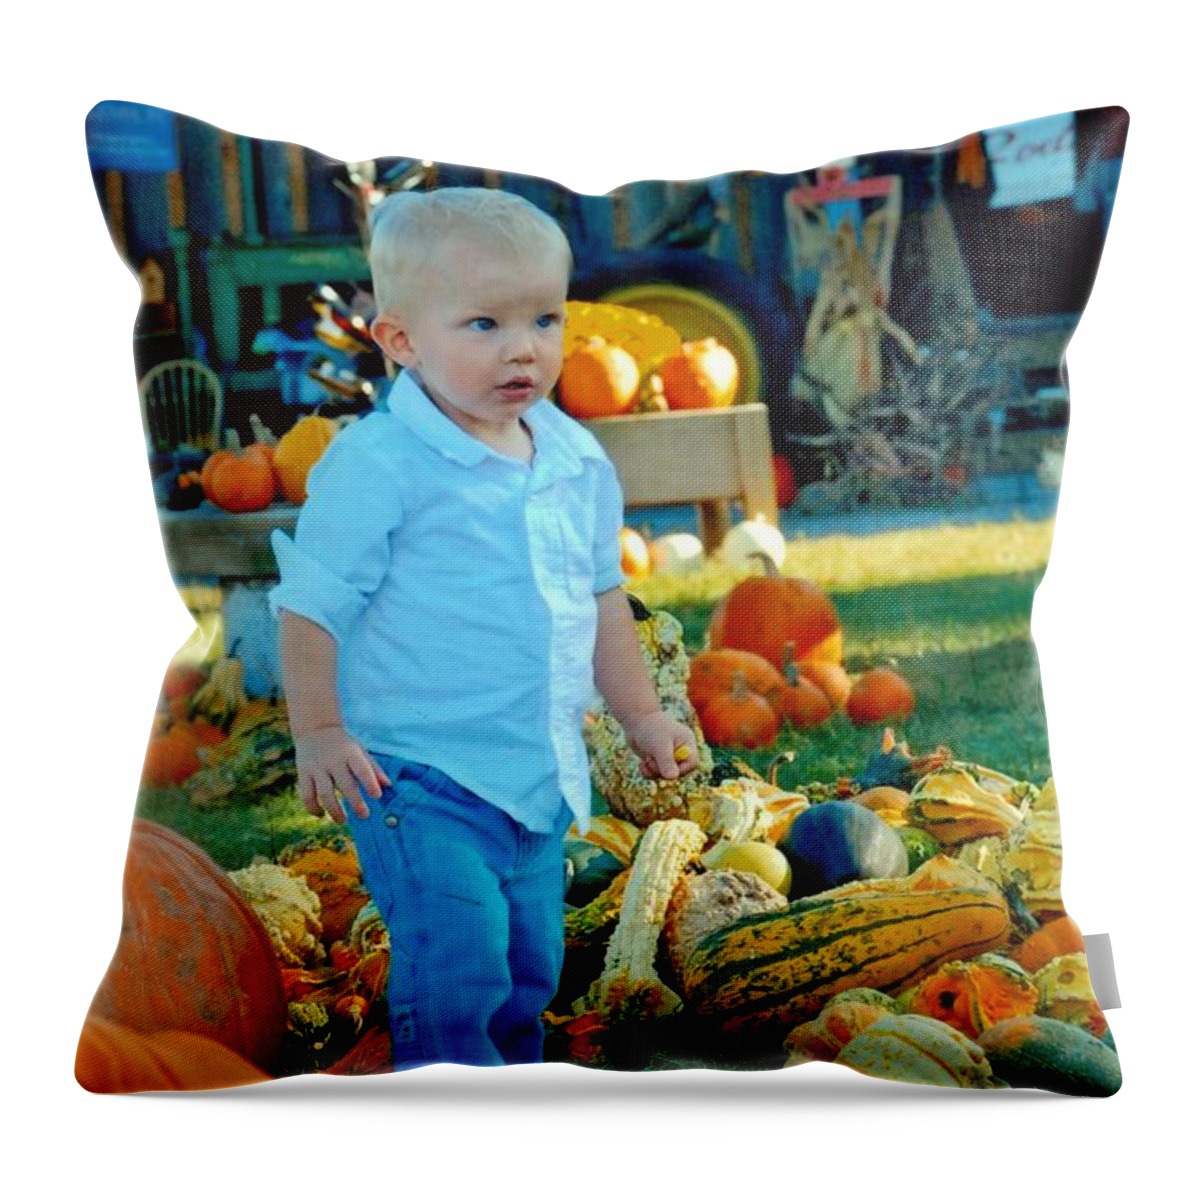 Pumpkin Throw Pillow featuring the photograph Pumpkin by Phil Burton